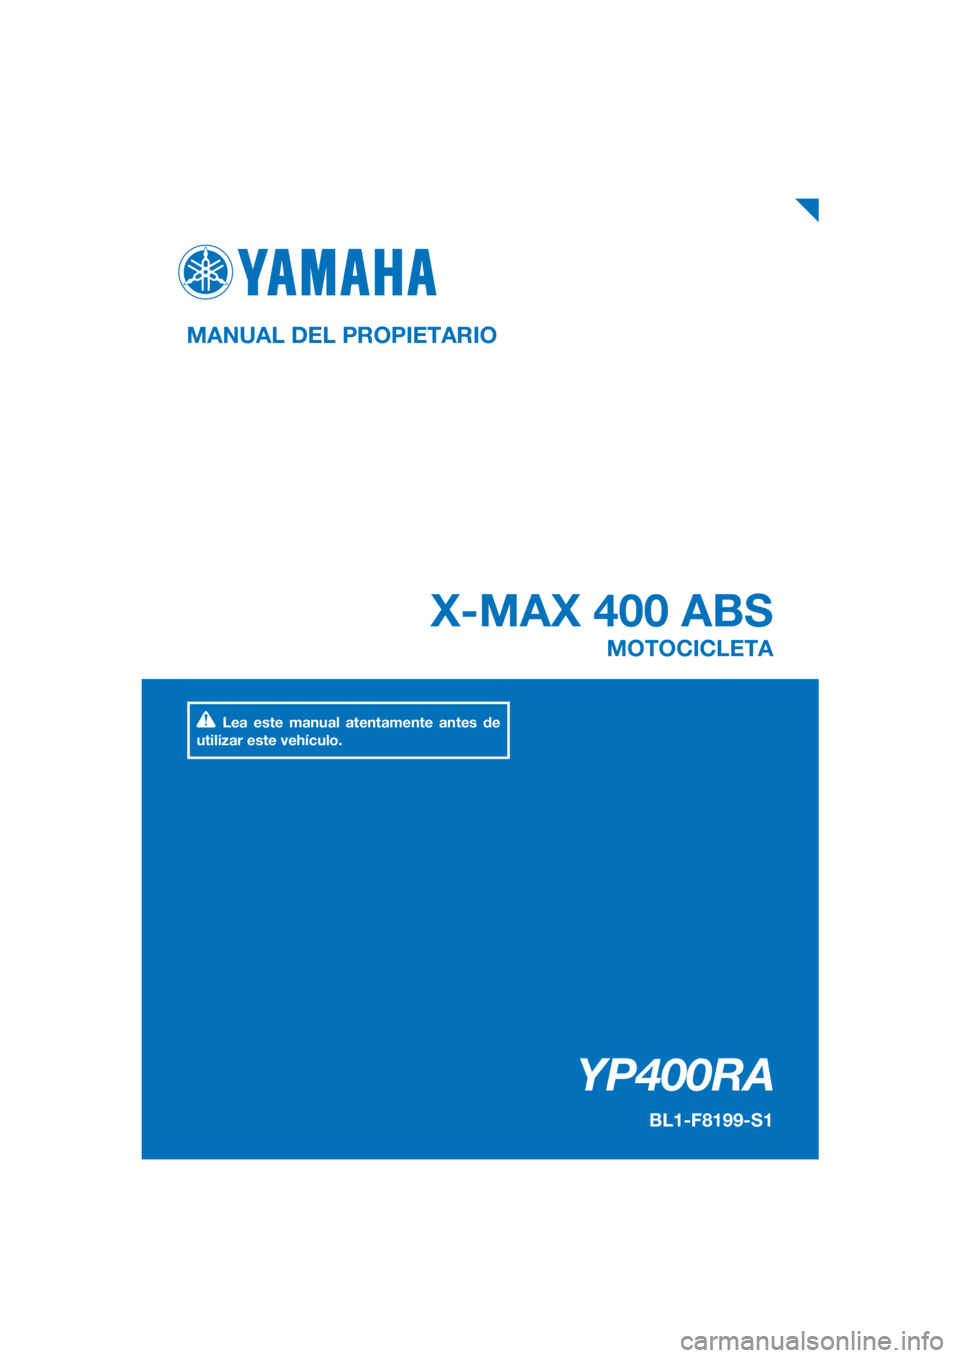 YAMAHA XMAX 400 2020  Manuale de Empleo (in Spanish) PANTONE285C
YP400RA
X-MAX 400 ABS
MANUAL DEL PROPIETARIO
BL1-F8199-S1
MOTOCICLETA
Lea este manual atentamente antes de 
utilizar este vehículo.
[Spanish  (S)] 